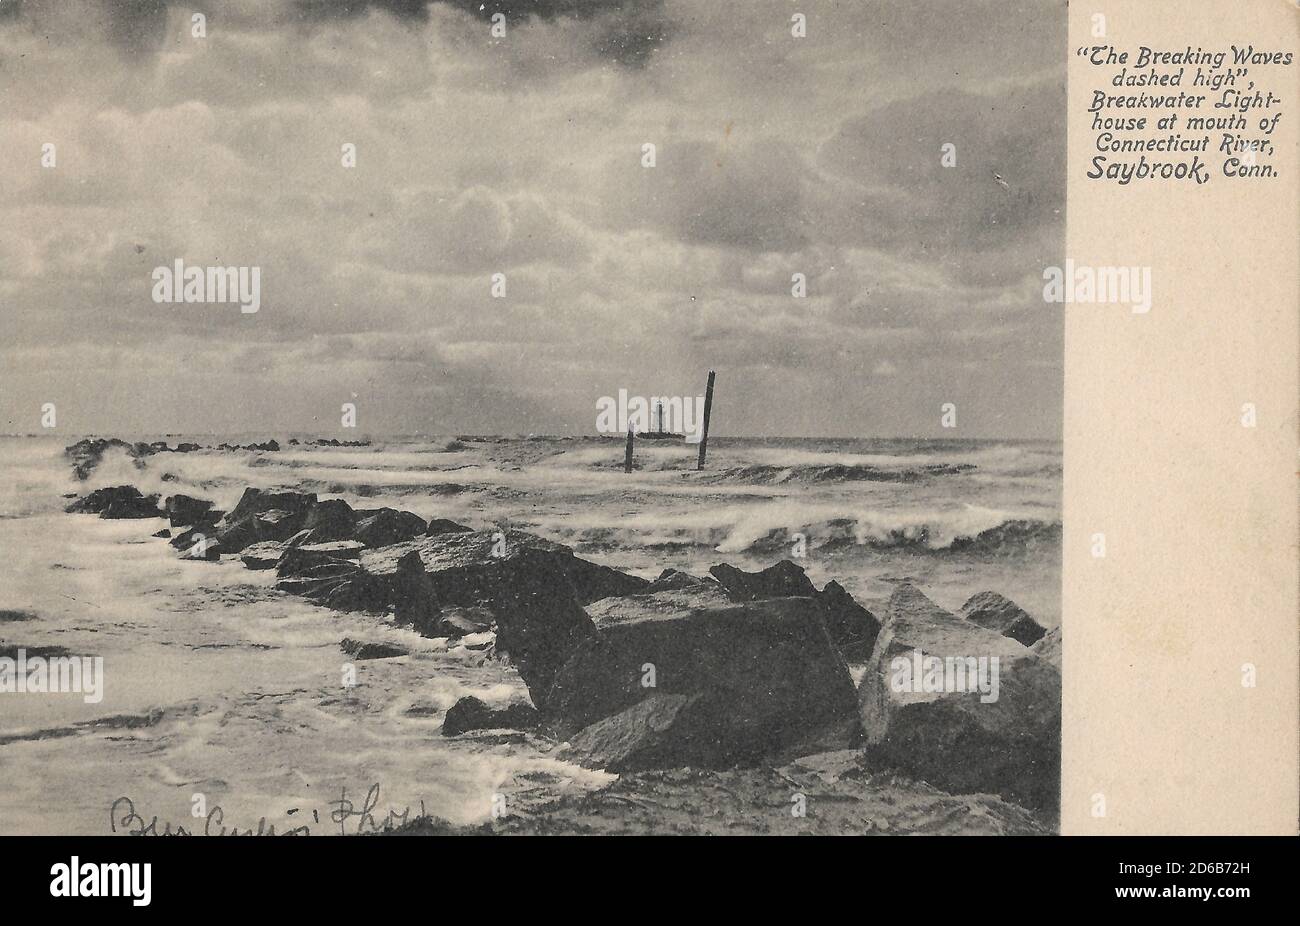 Vecchia immagine del faro di Breakwater 'The Breaking Waves tratted High' alla foce del fiume Connecticut, Saybrook, Connecticut Foto Stock